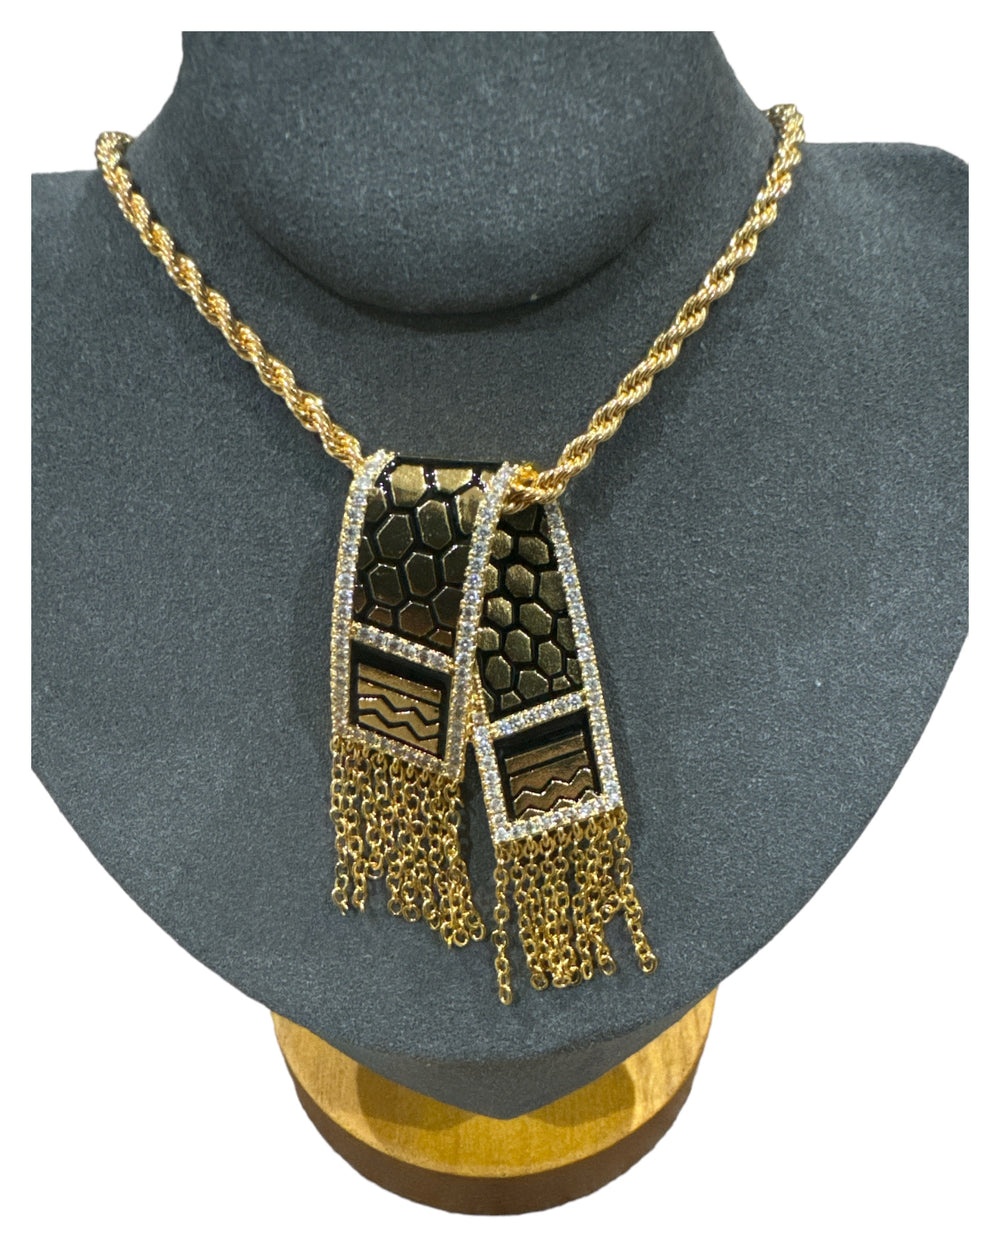 L'élégance réinventée : collier keffieh doré avec cristaux cloutés 